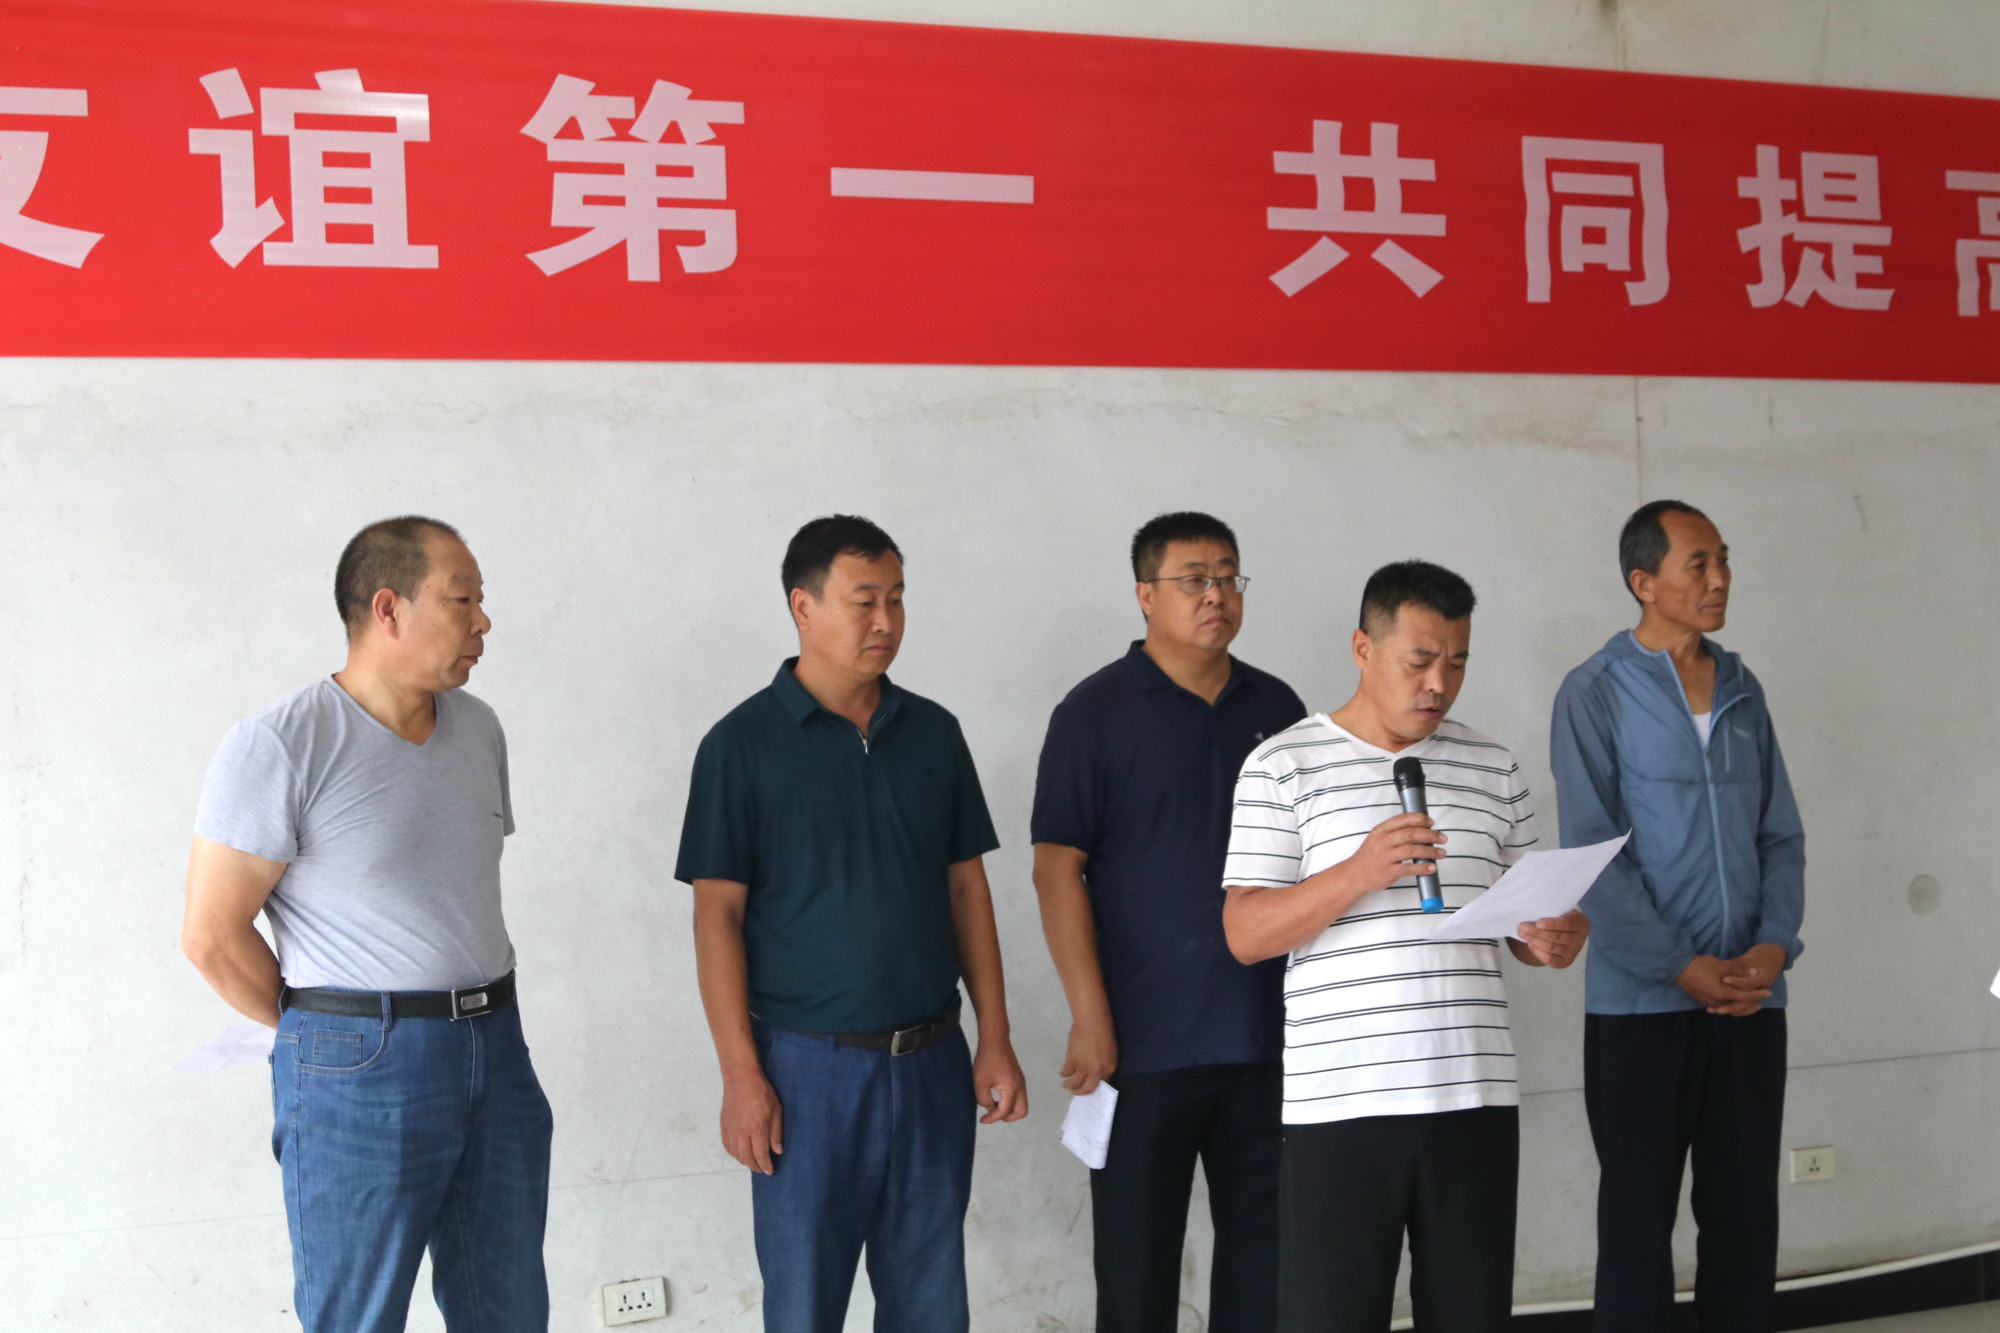 迎国庆 迎二青农民乒乓球单打赛在盂县东宋村举行